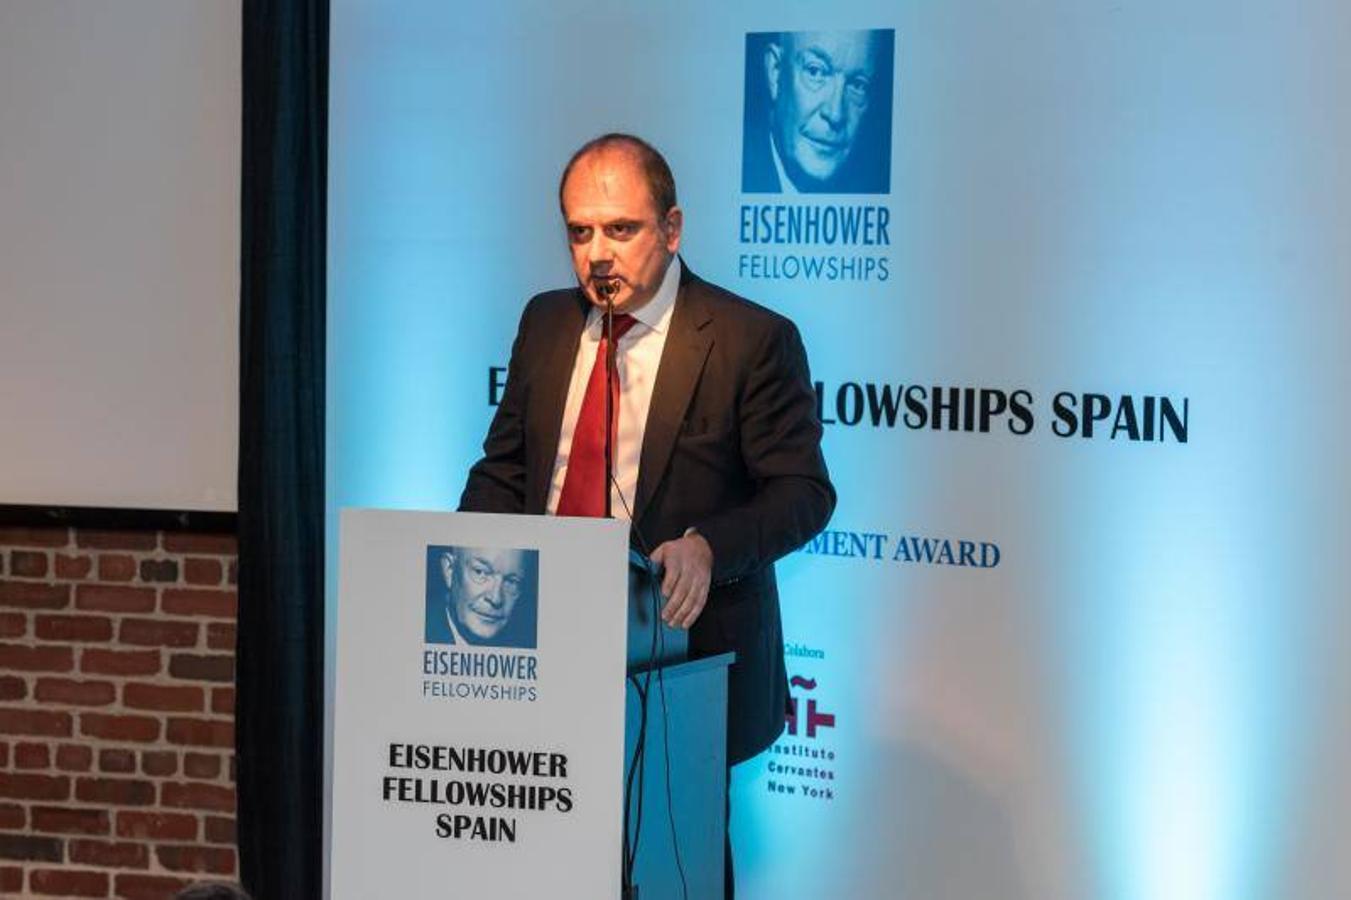 El Director Editorial de Vocento Benjamin Lana agradece el premio "First Amendment Award" otorgado por Eisenhower Fellows España durante una ceremonia en el Instituto Cervantes de Nueva York